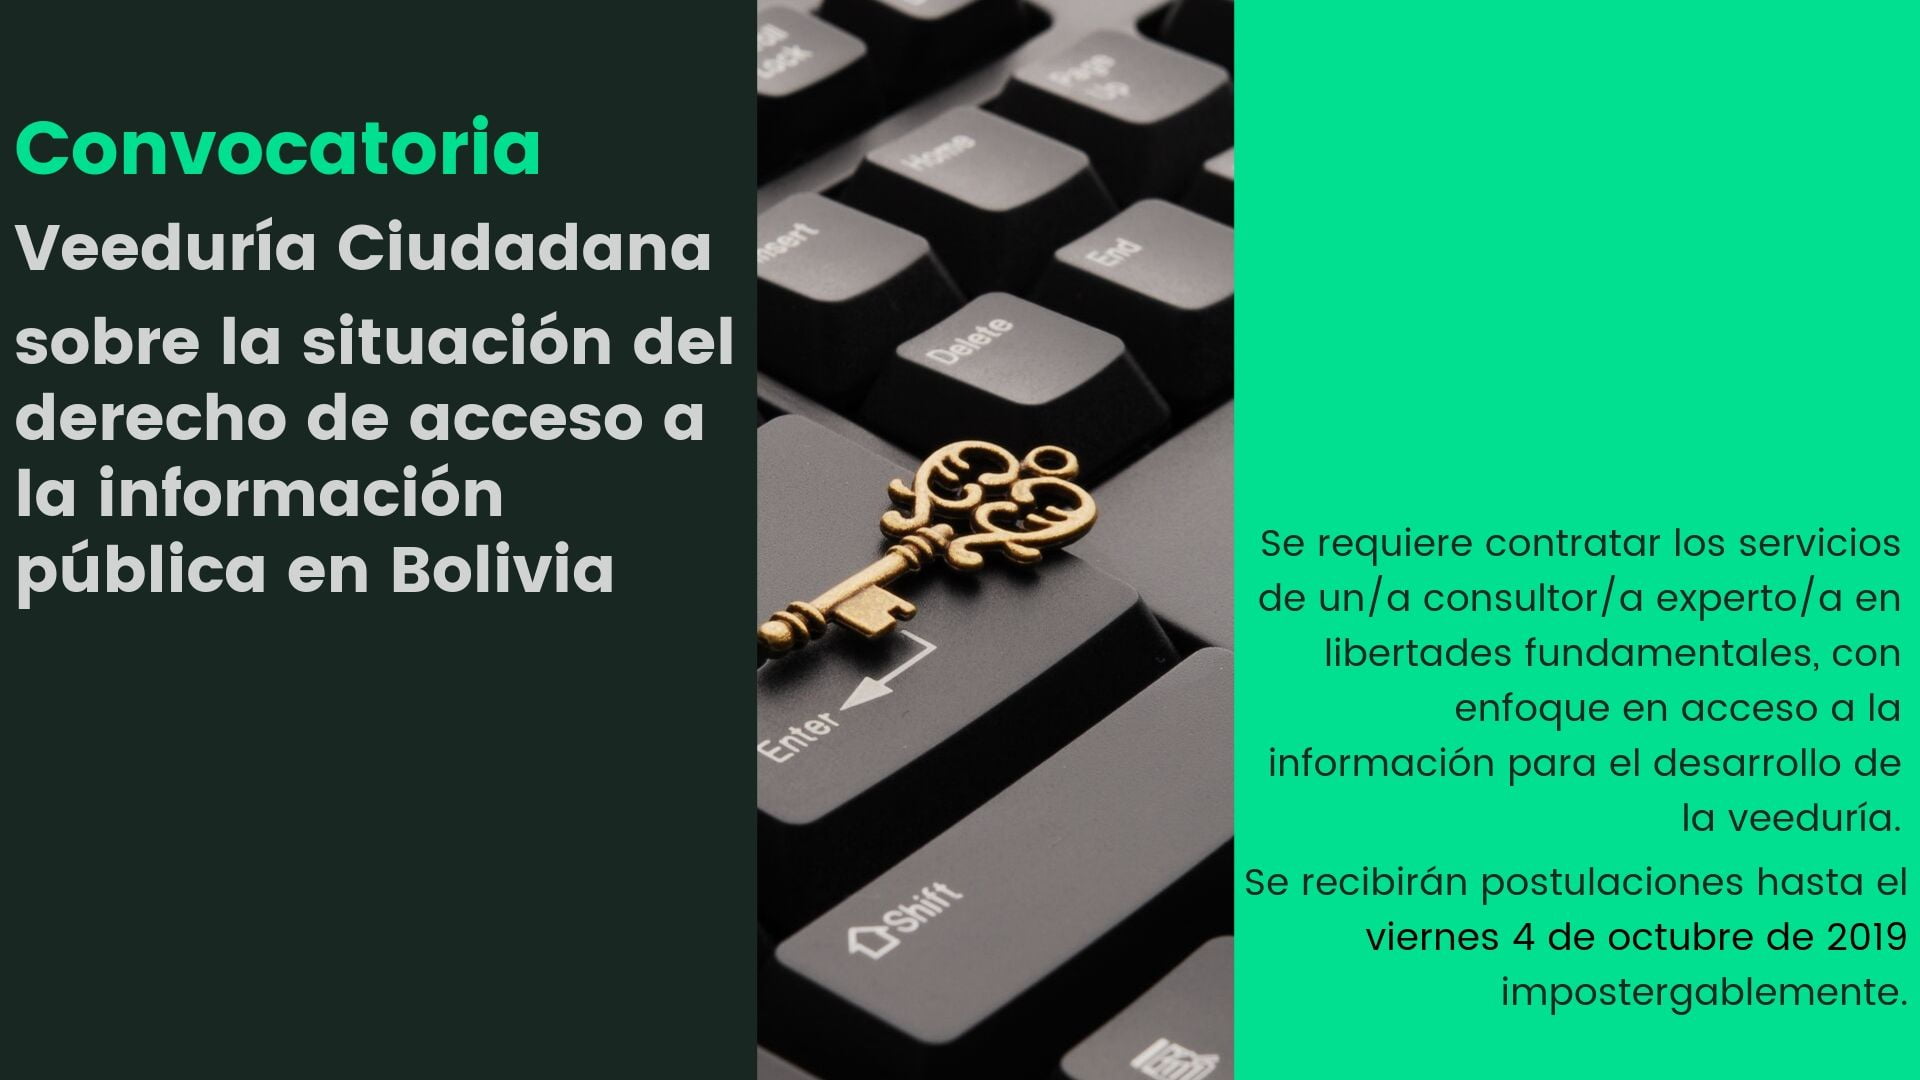 Convocatoria: Consultor(a) para realizar Veeduría Ciudadana sobre la situación del derecho de acceso a la información pública en Bolivia